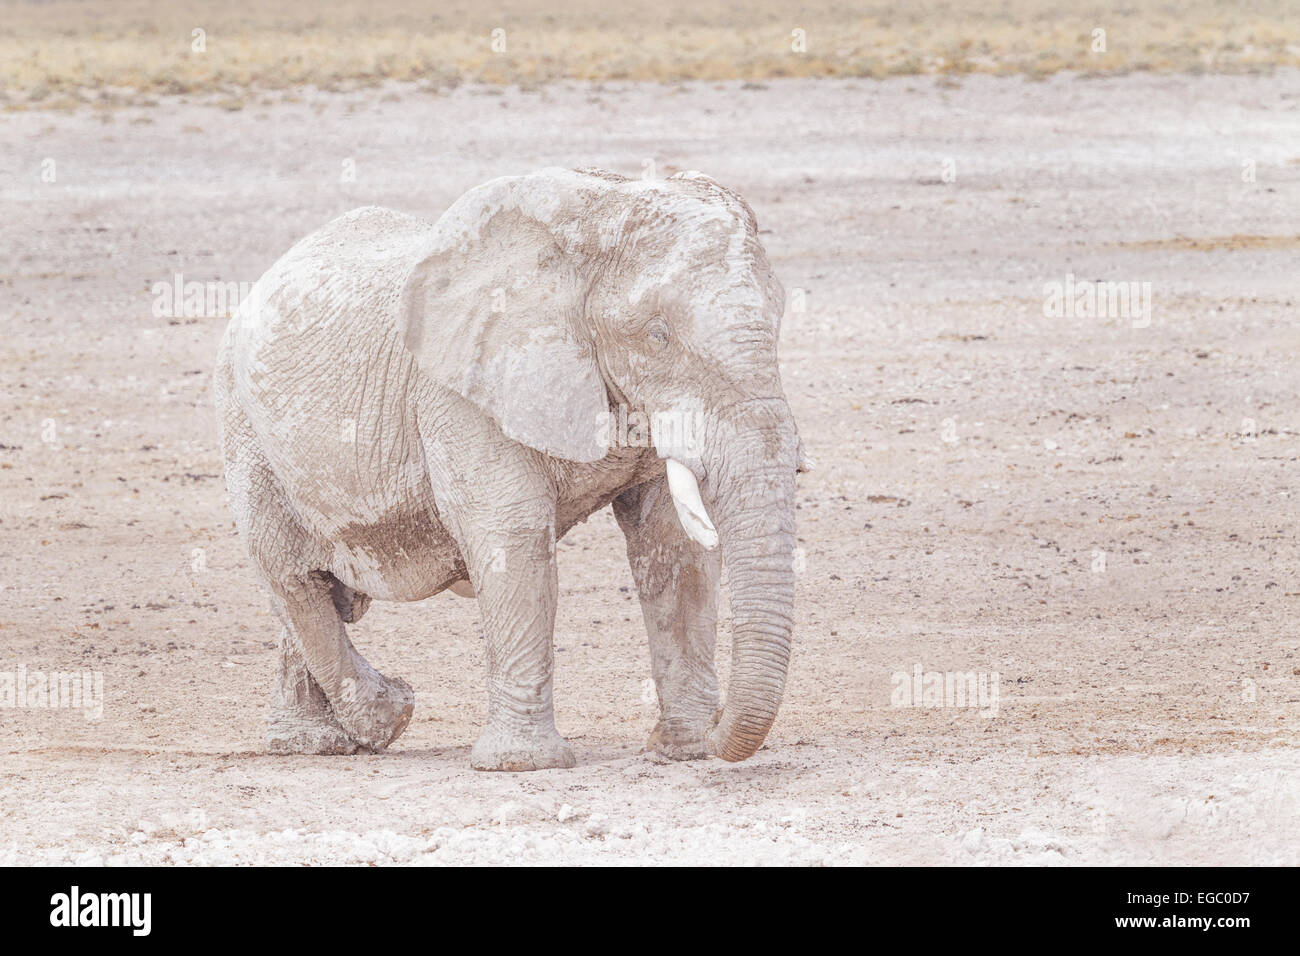 Un éléphant couvert de boue dans le parc national d'Etosha, Namibie. Banque D'Images